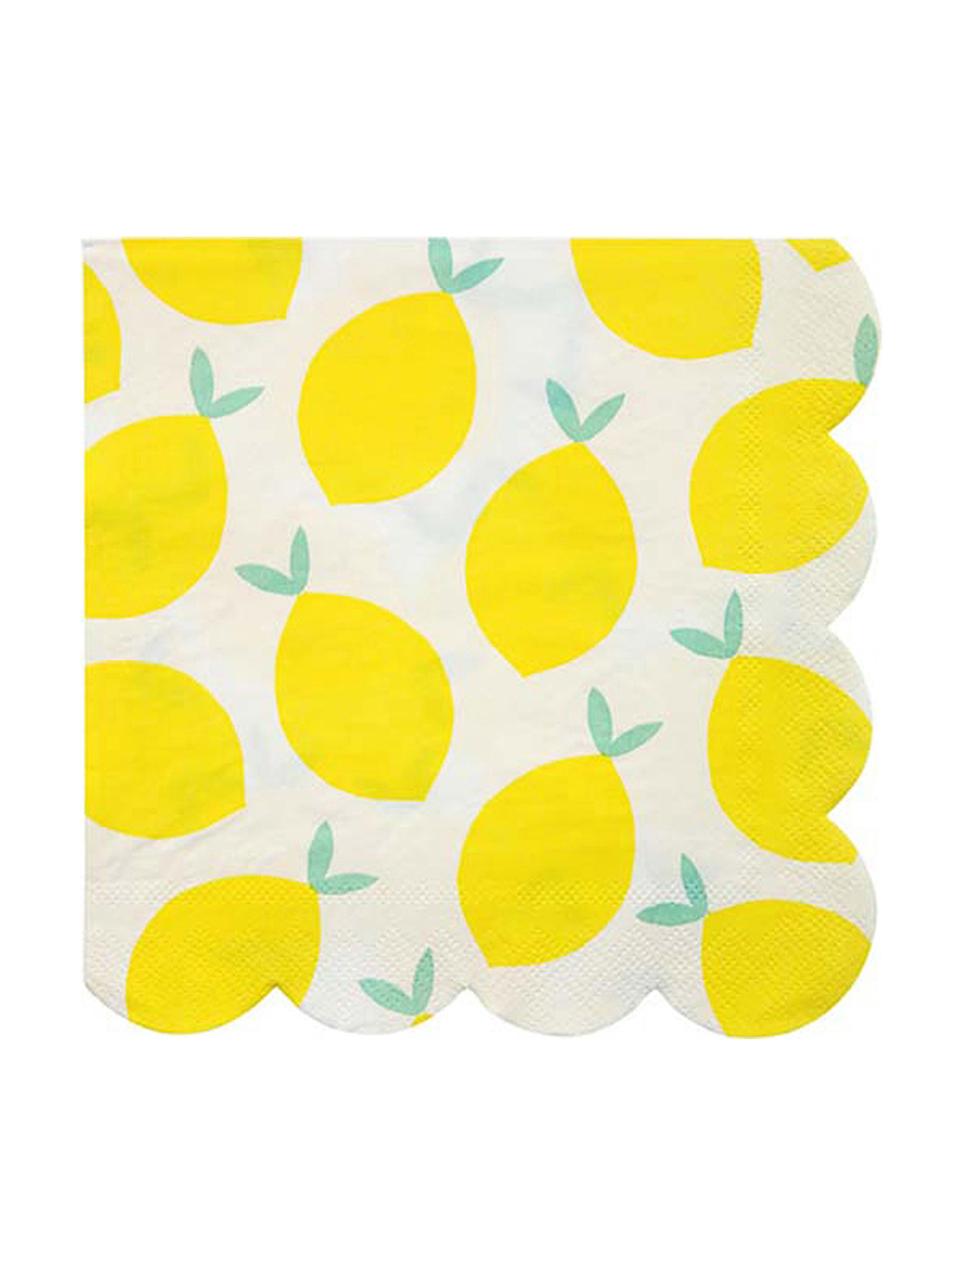 Papírový ubrousek Lemon, 20 ks, Bílá, žlutá, zelená